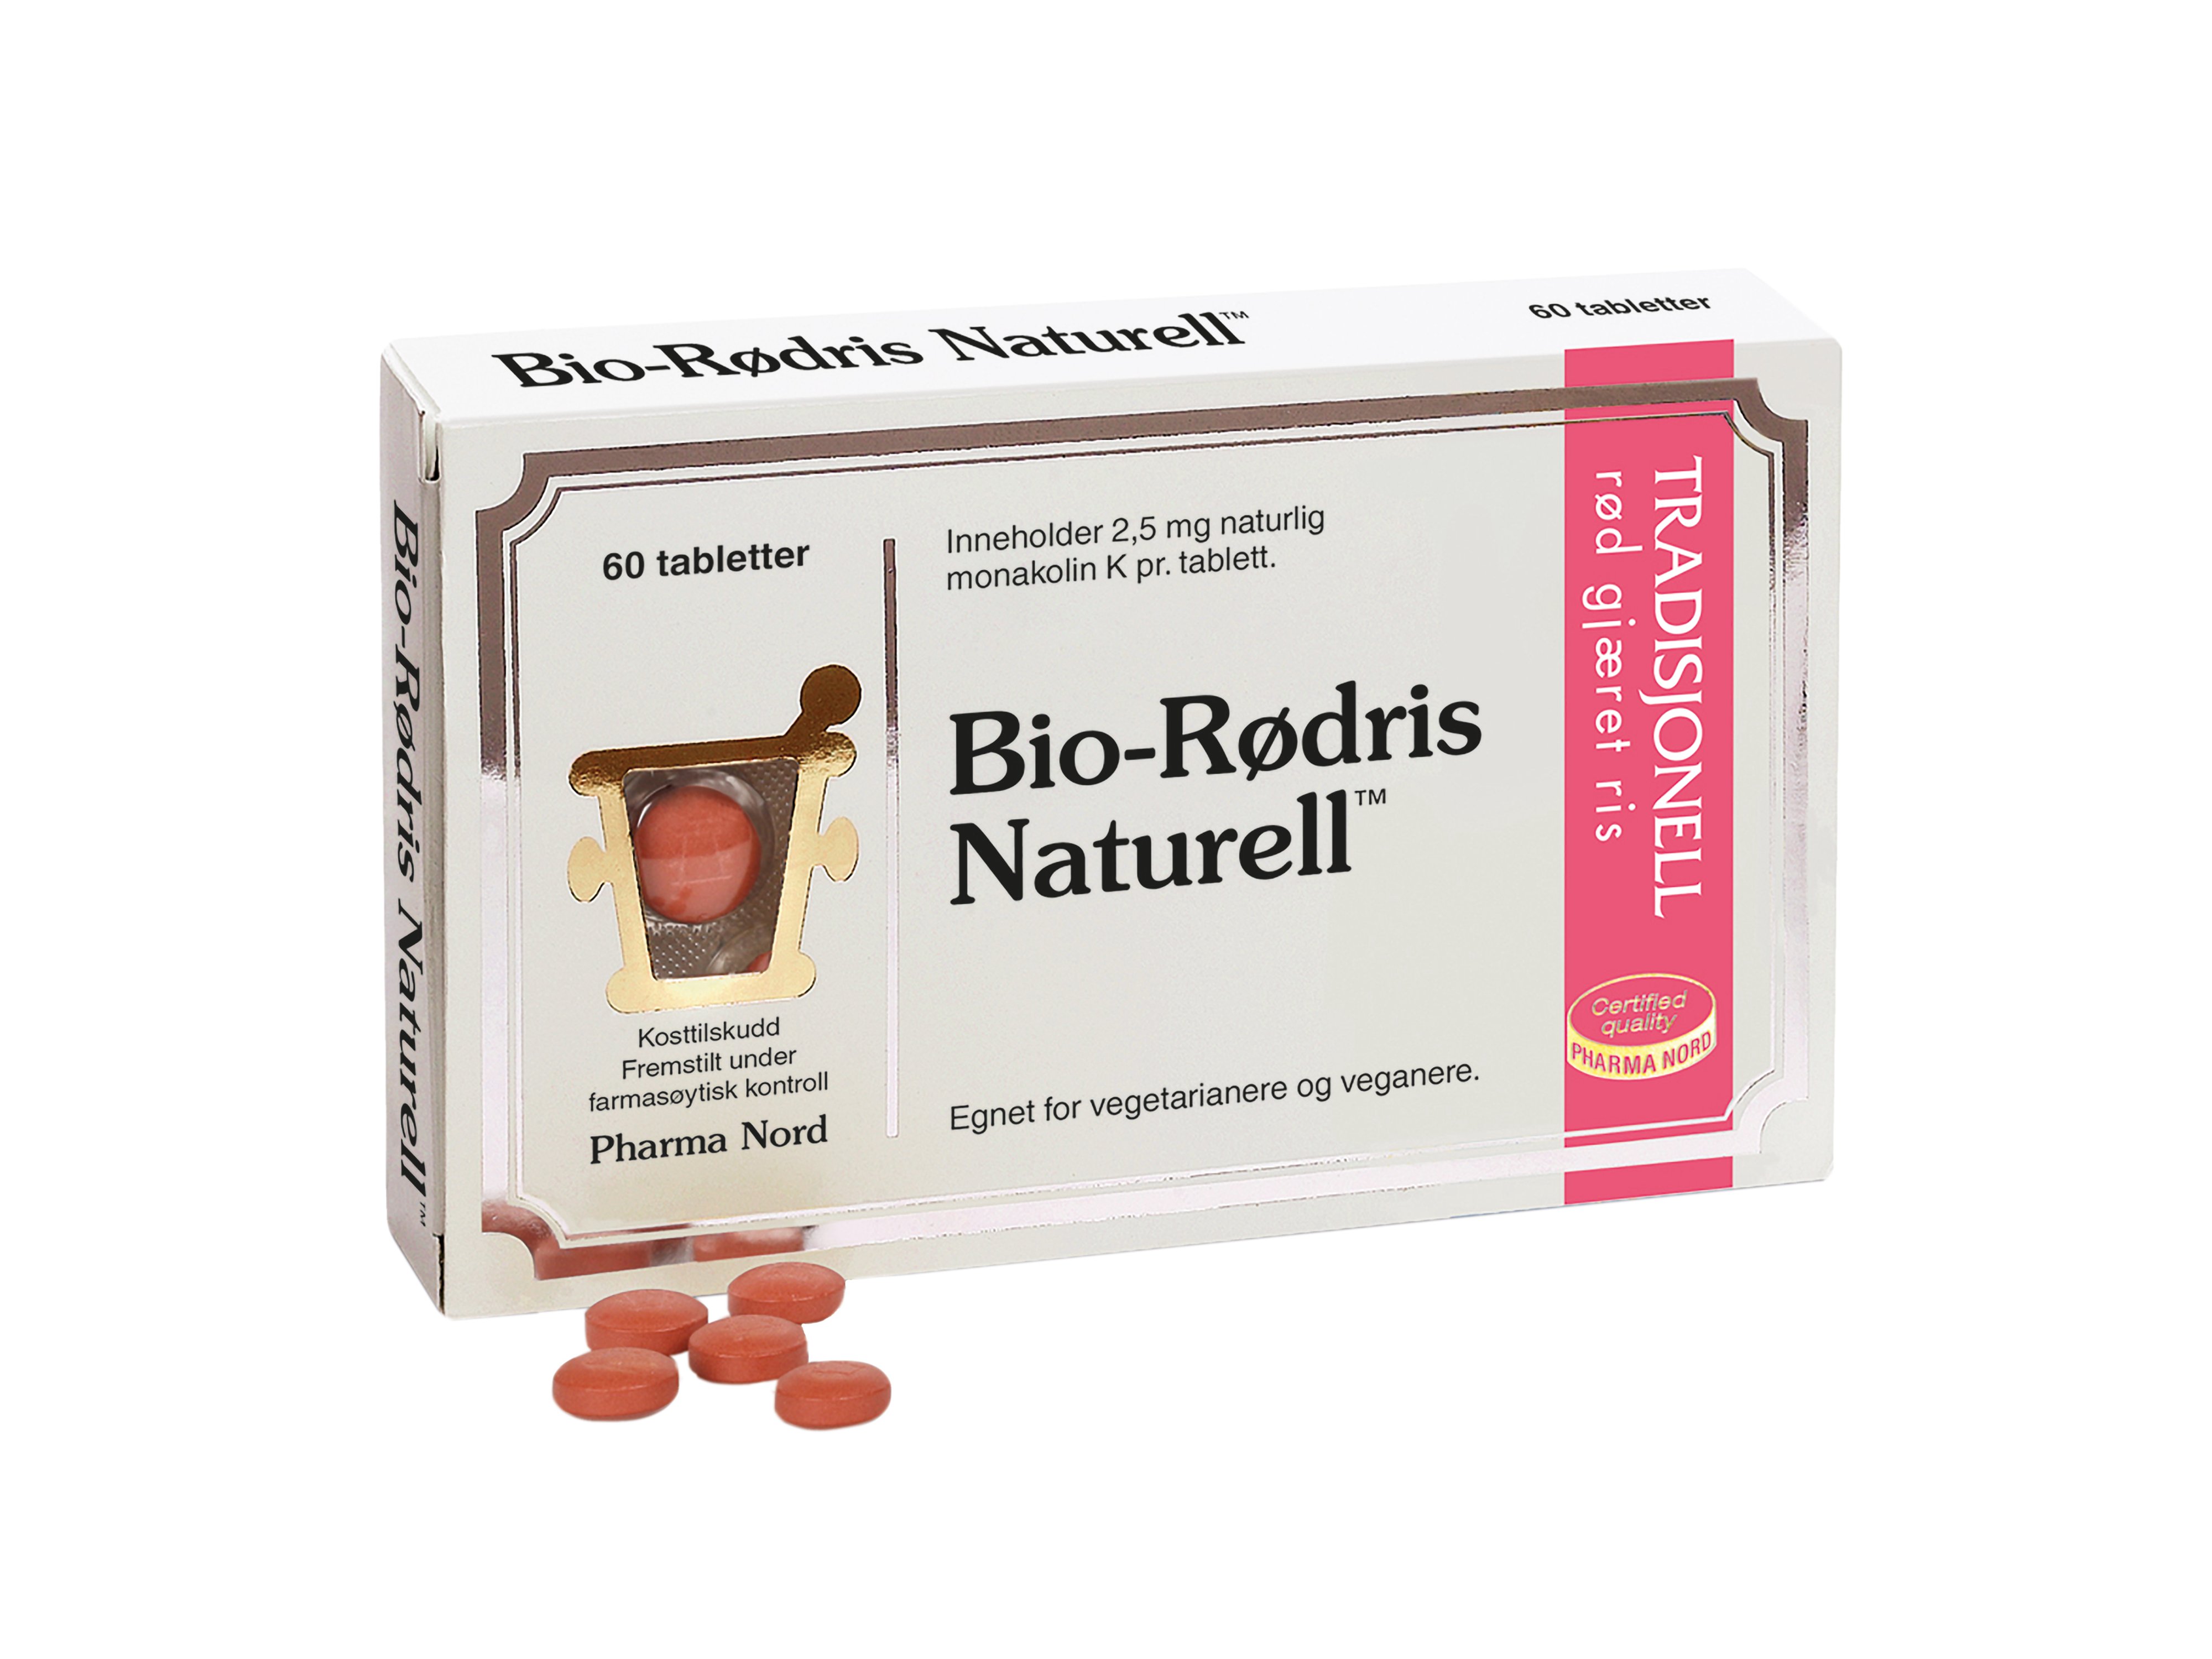 Pharma Nord Bio-Rødris Naturell, 60 tabletter